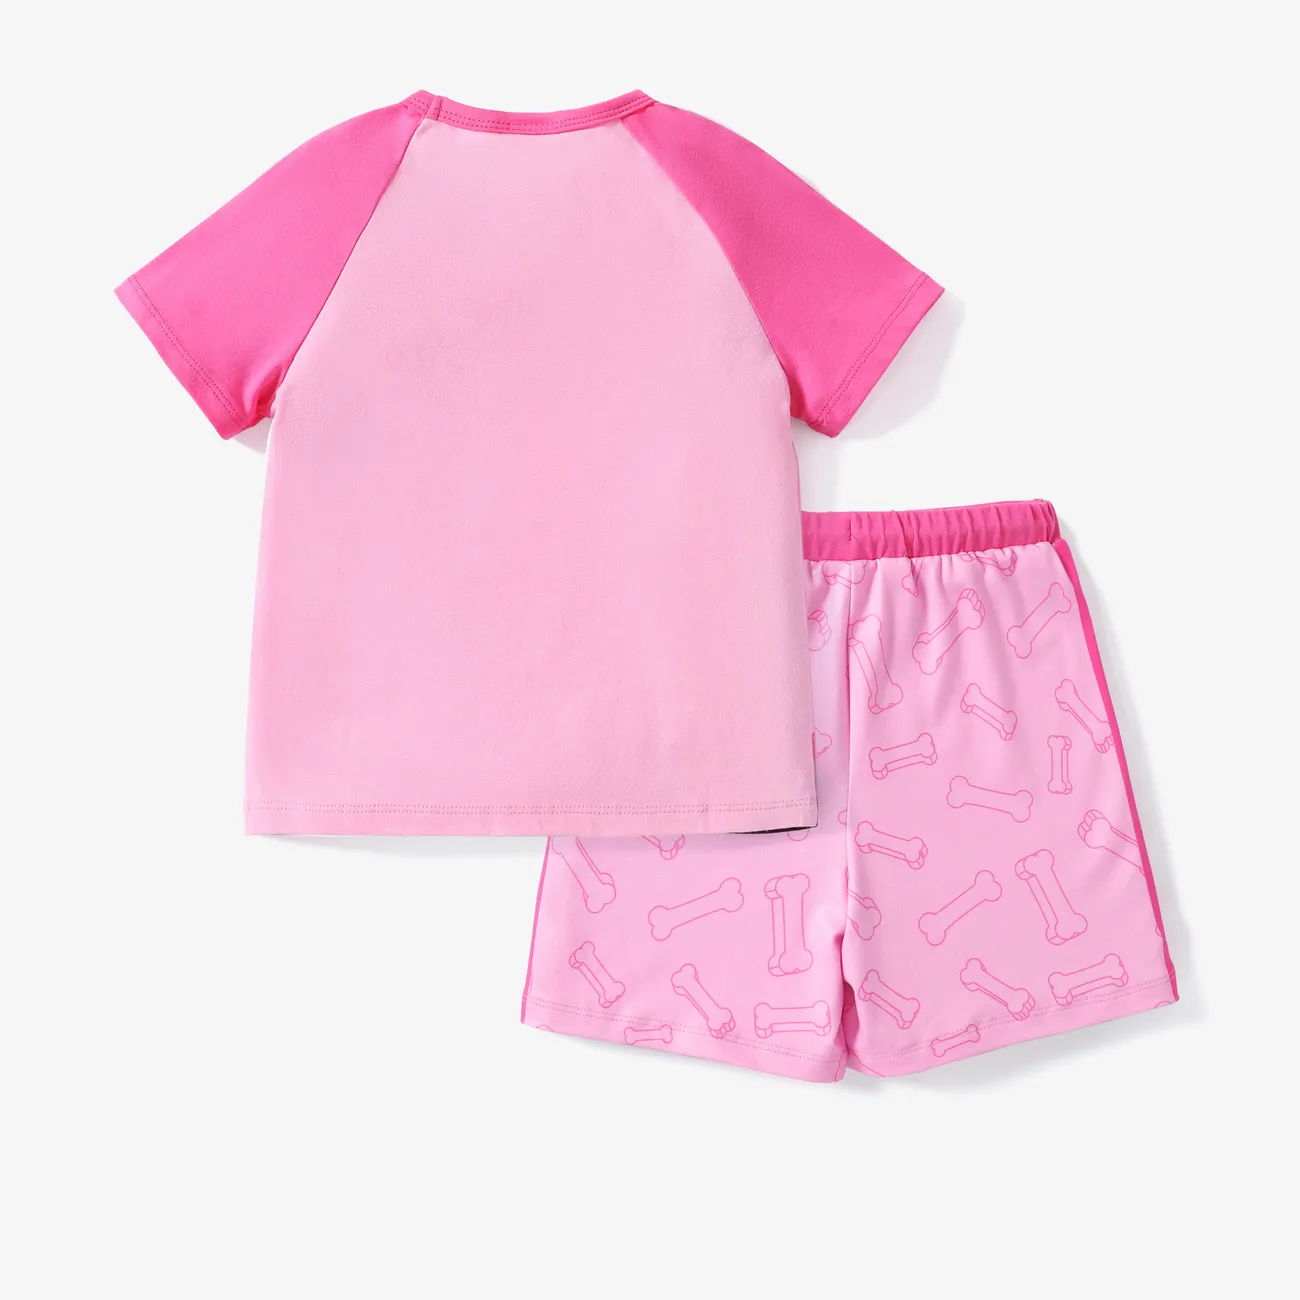 Patrulha Canina 2 unidades Criança Unissexo Costuras de tecido Infantil Cão conjuntos de camisetas Rosa big image 1